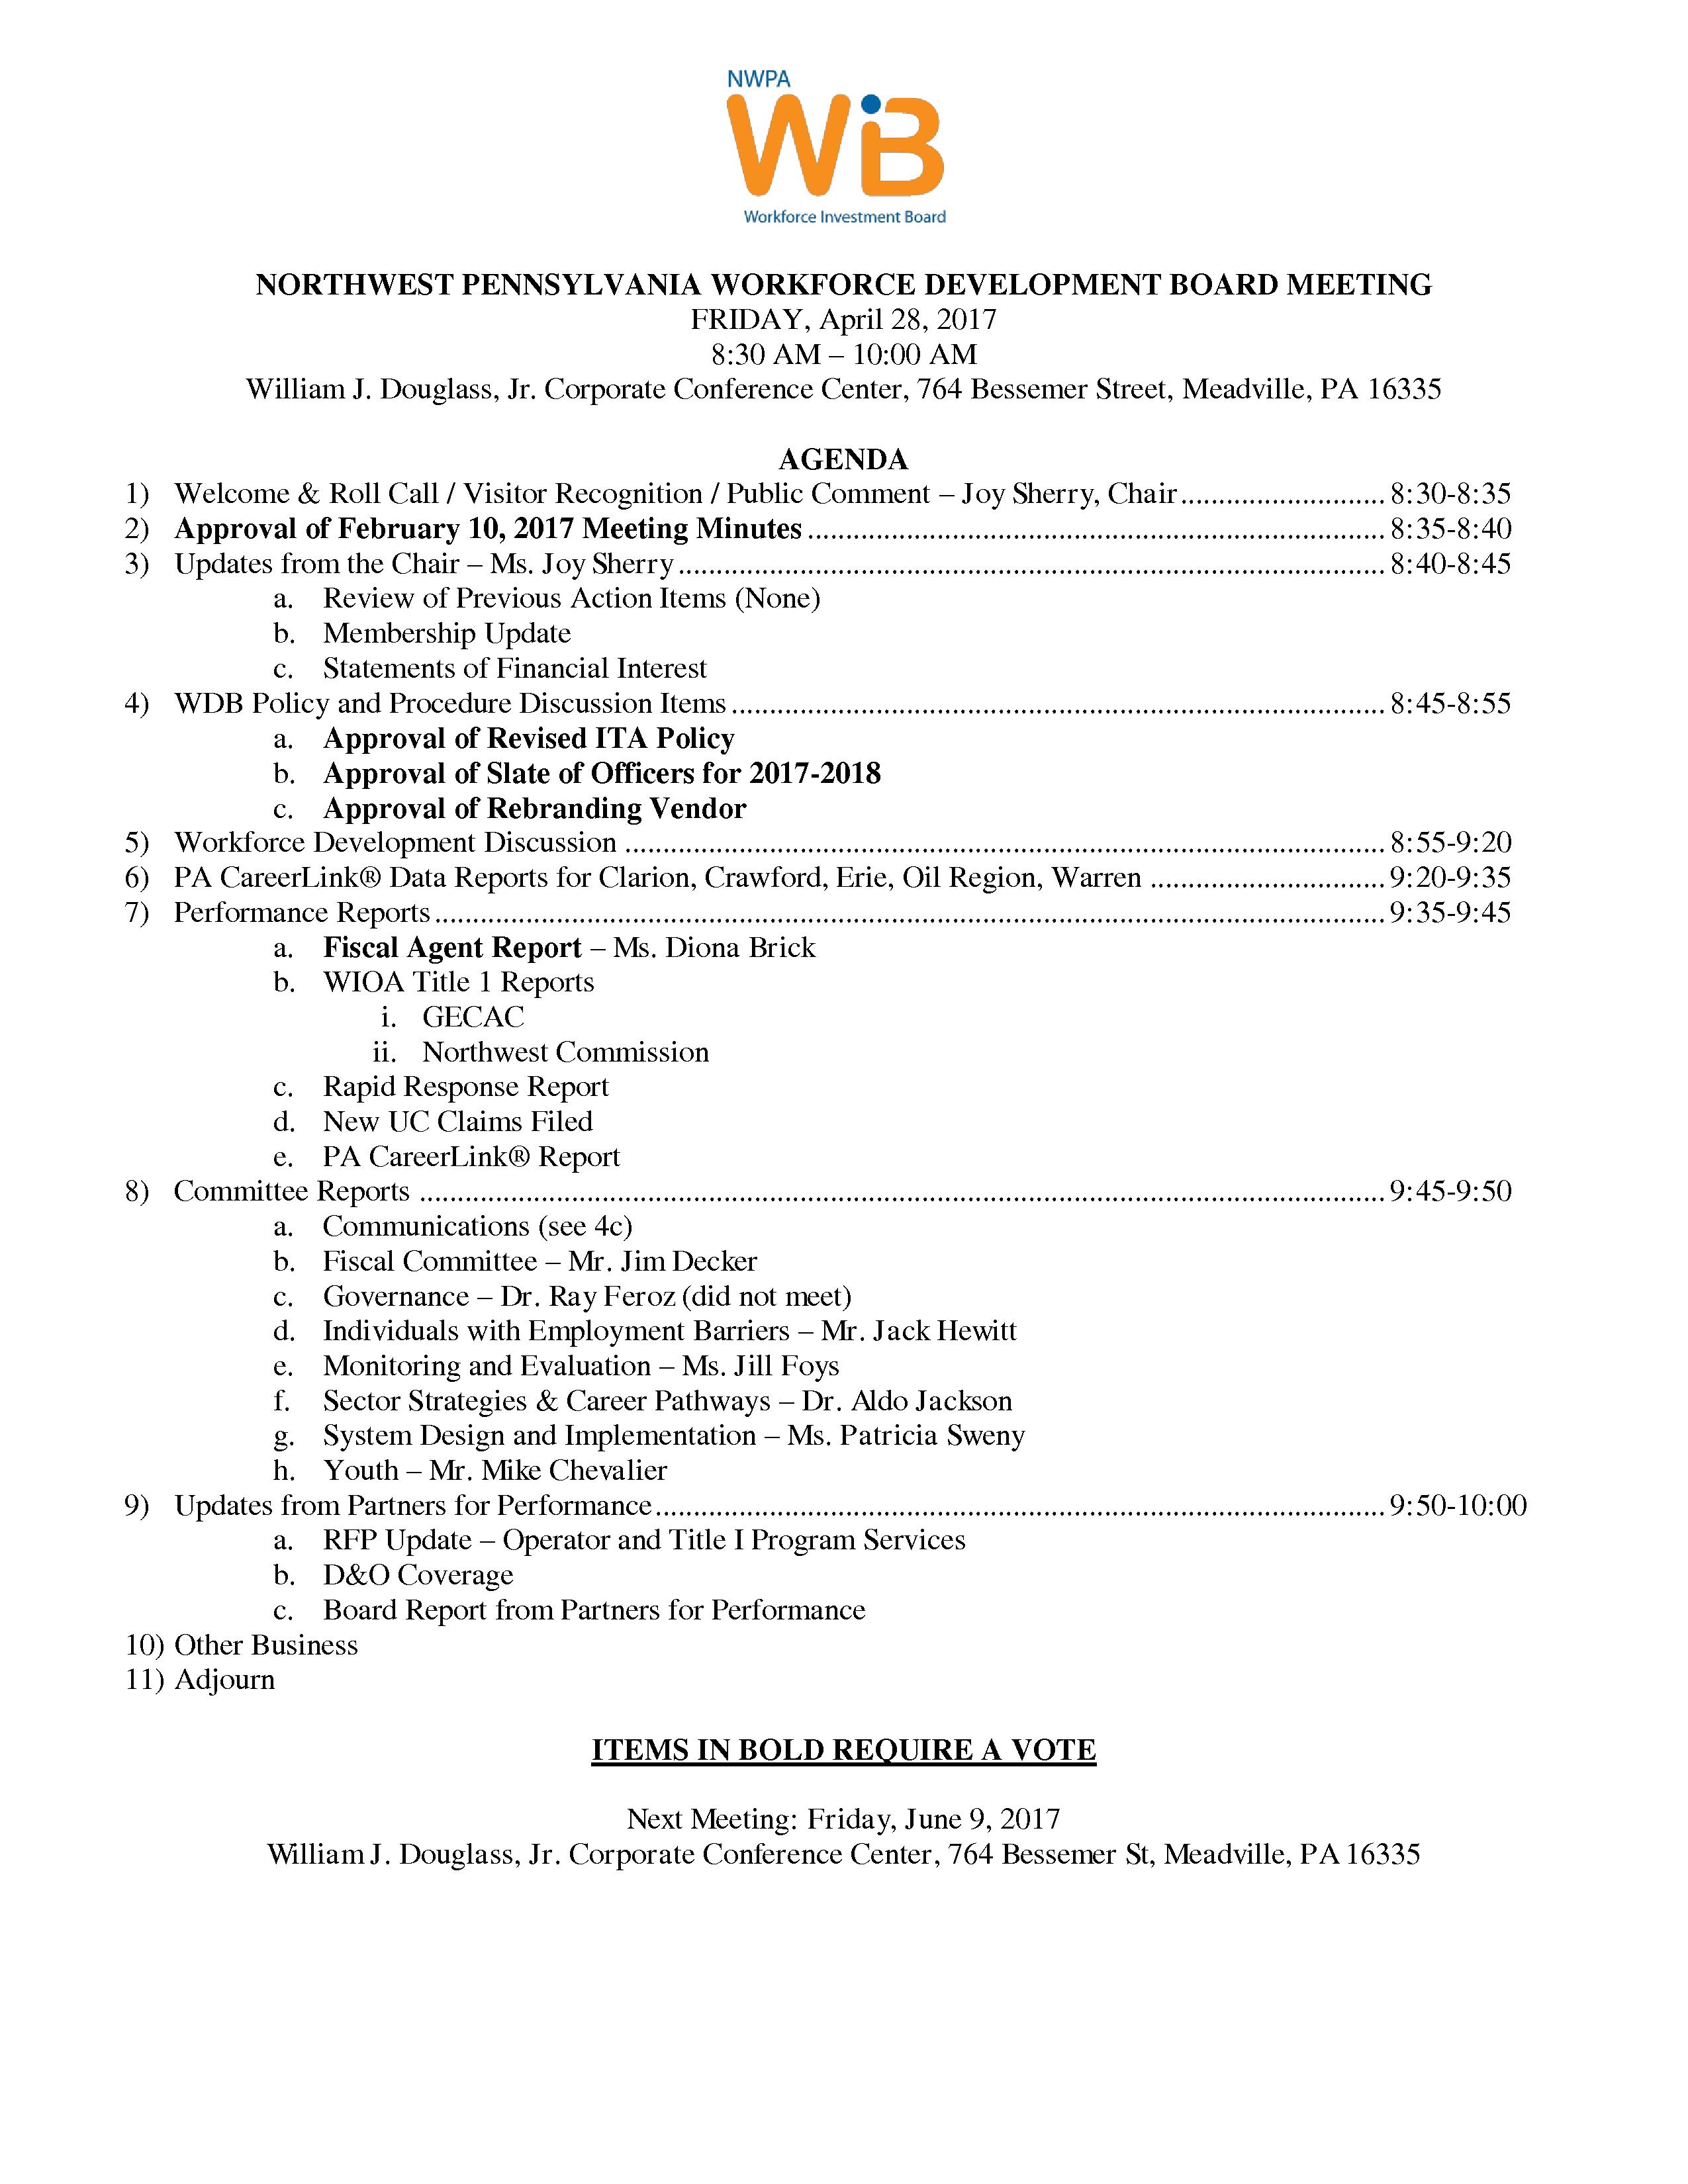 NWPA WDB Agenda 04-28-17